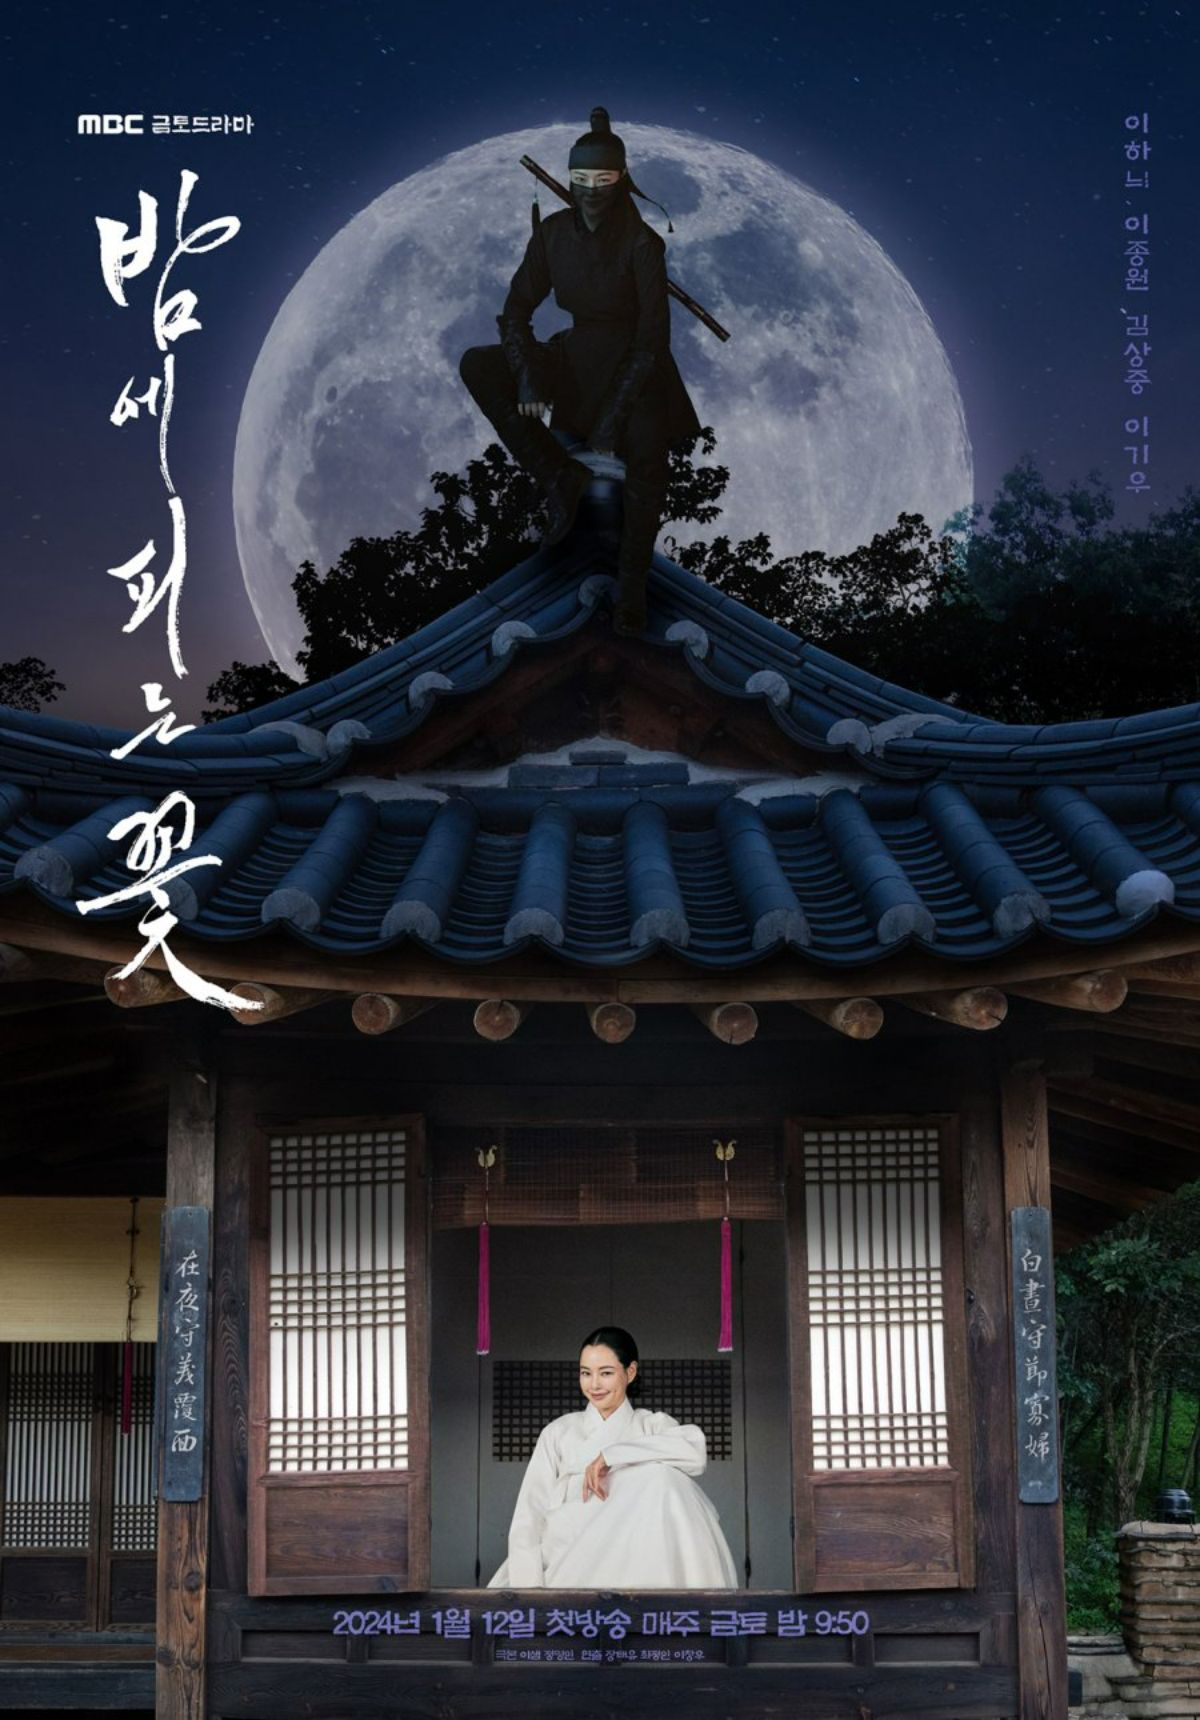 Bộ phim Hoa Nở Về Đêm (Knight Flower) lấy bối cảnh thời Joseon và kể về Cho Yeo Hwa (Lee Ha Nee - Honey Lee), một góa phụ đã mất chồng từ 15 năm trước